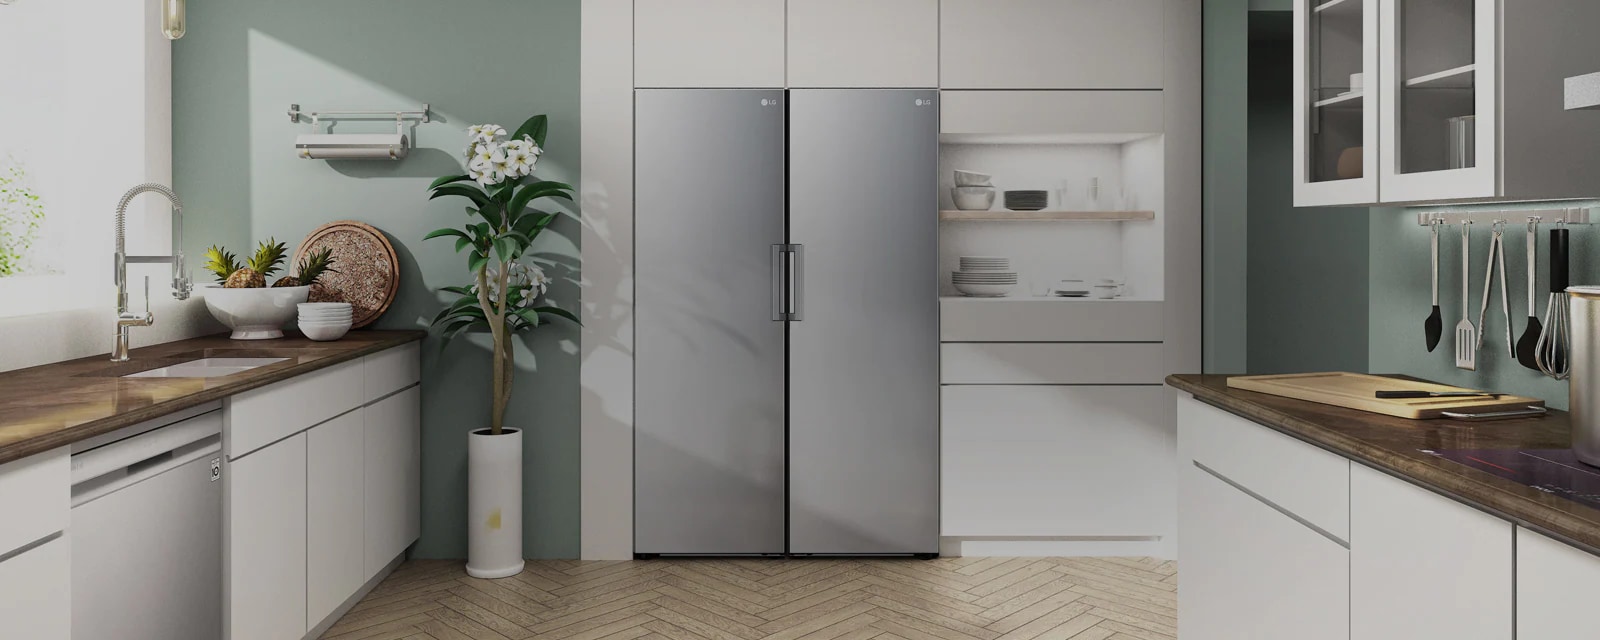 La vue de face du réfrigérateur et du congélateur ou affiché se fondant harmonieusement dans une cuisine moderne.